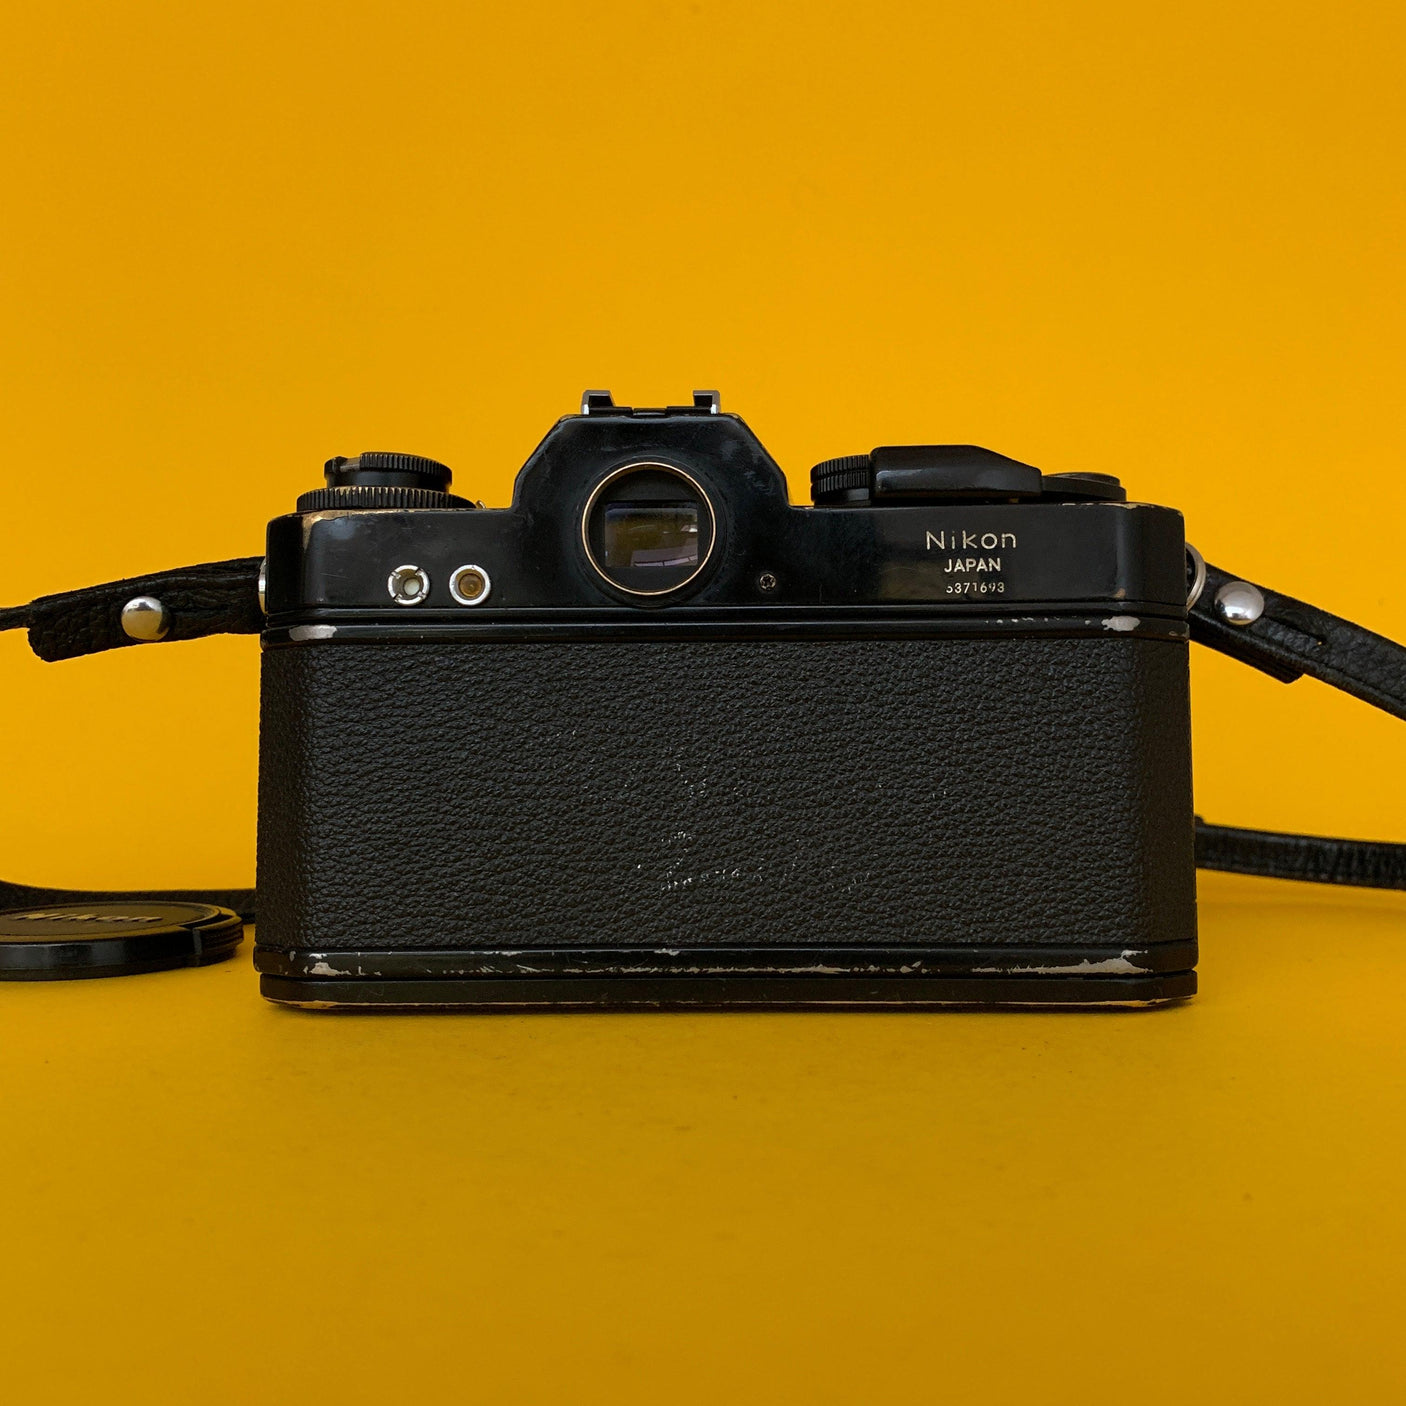 Nikomat EL Vintage 35mm SLR Film Camera w/ Nikkor-S f/2.8 35mm Lens